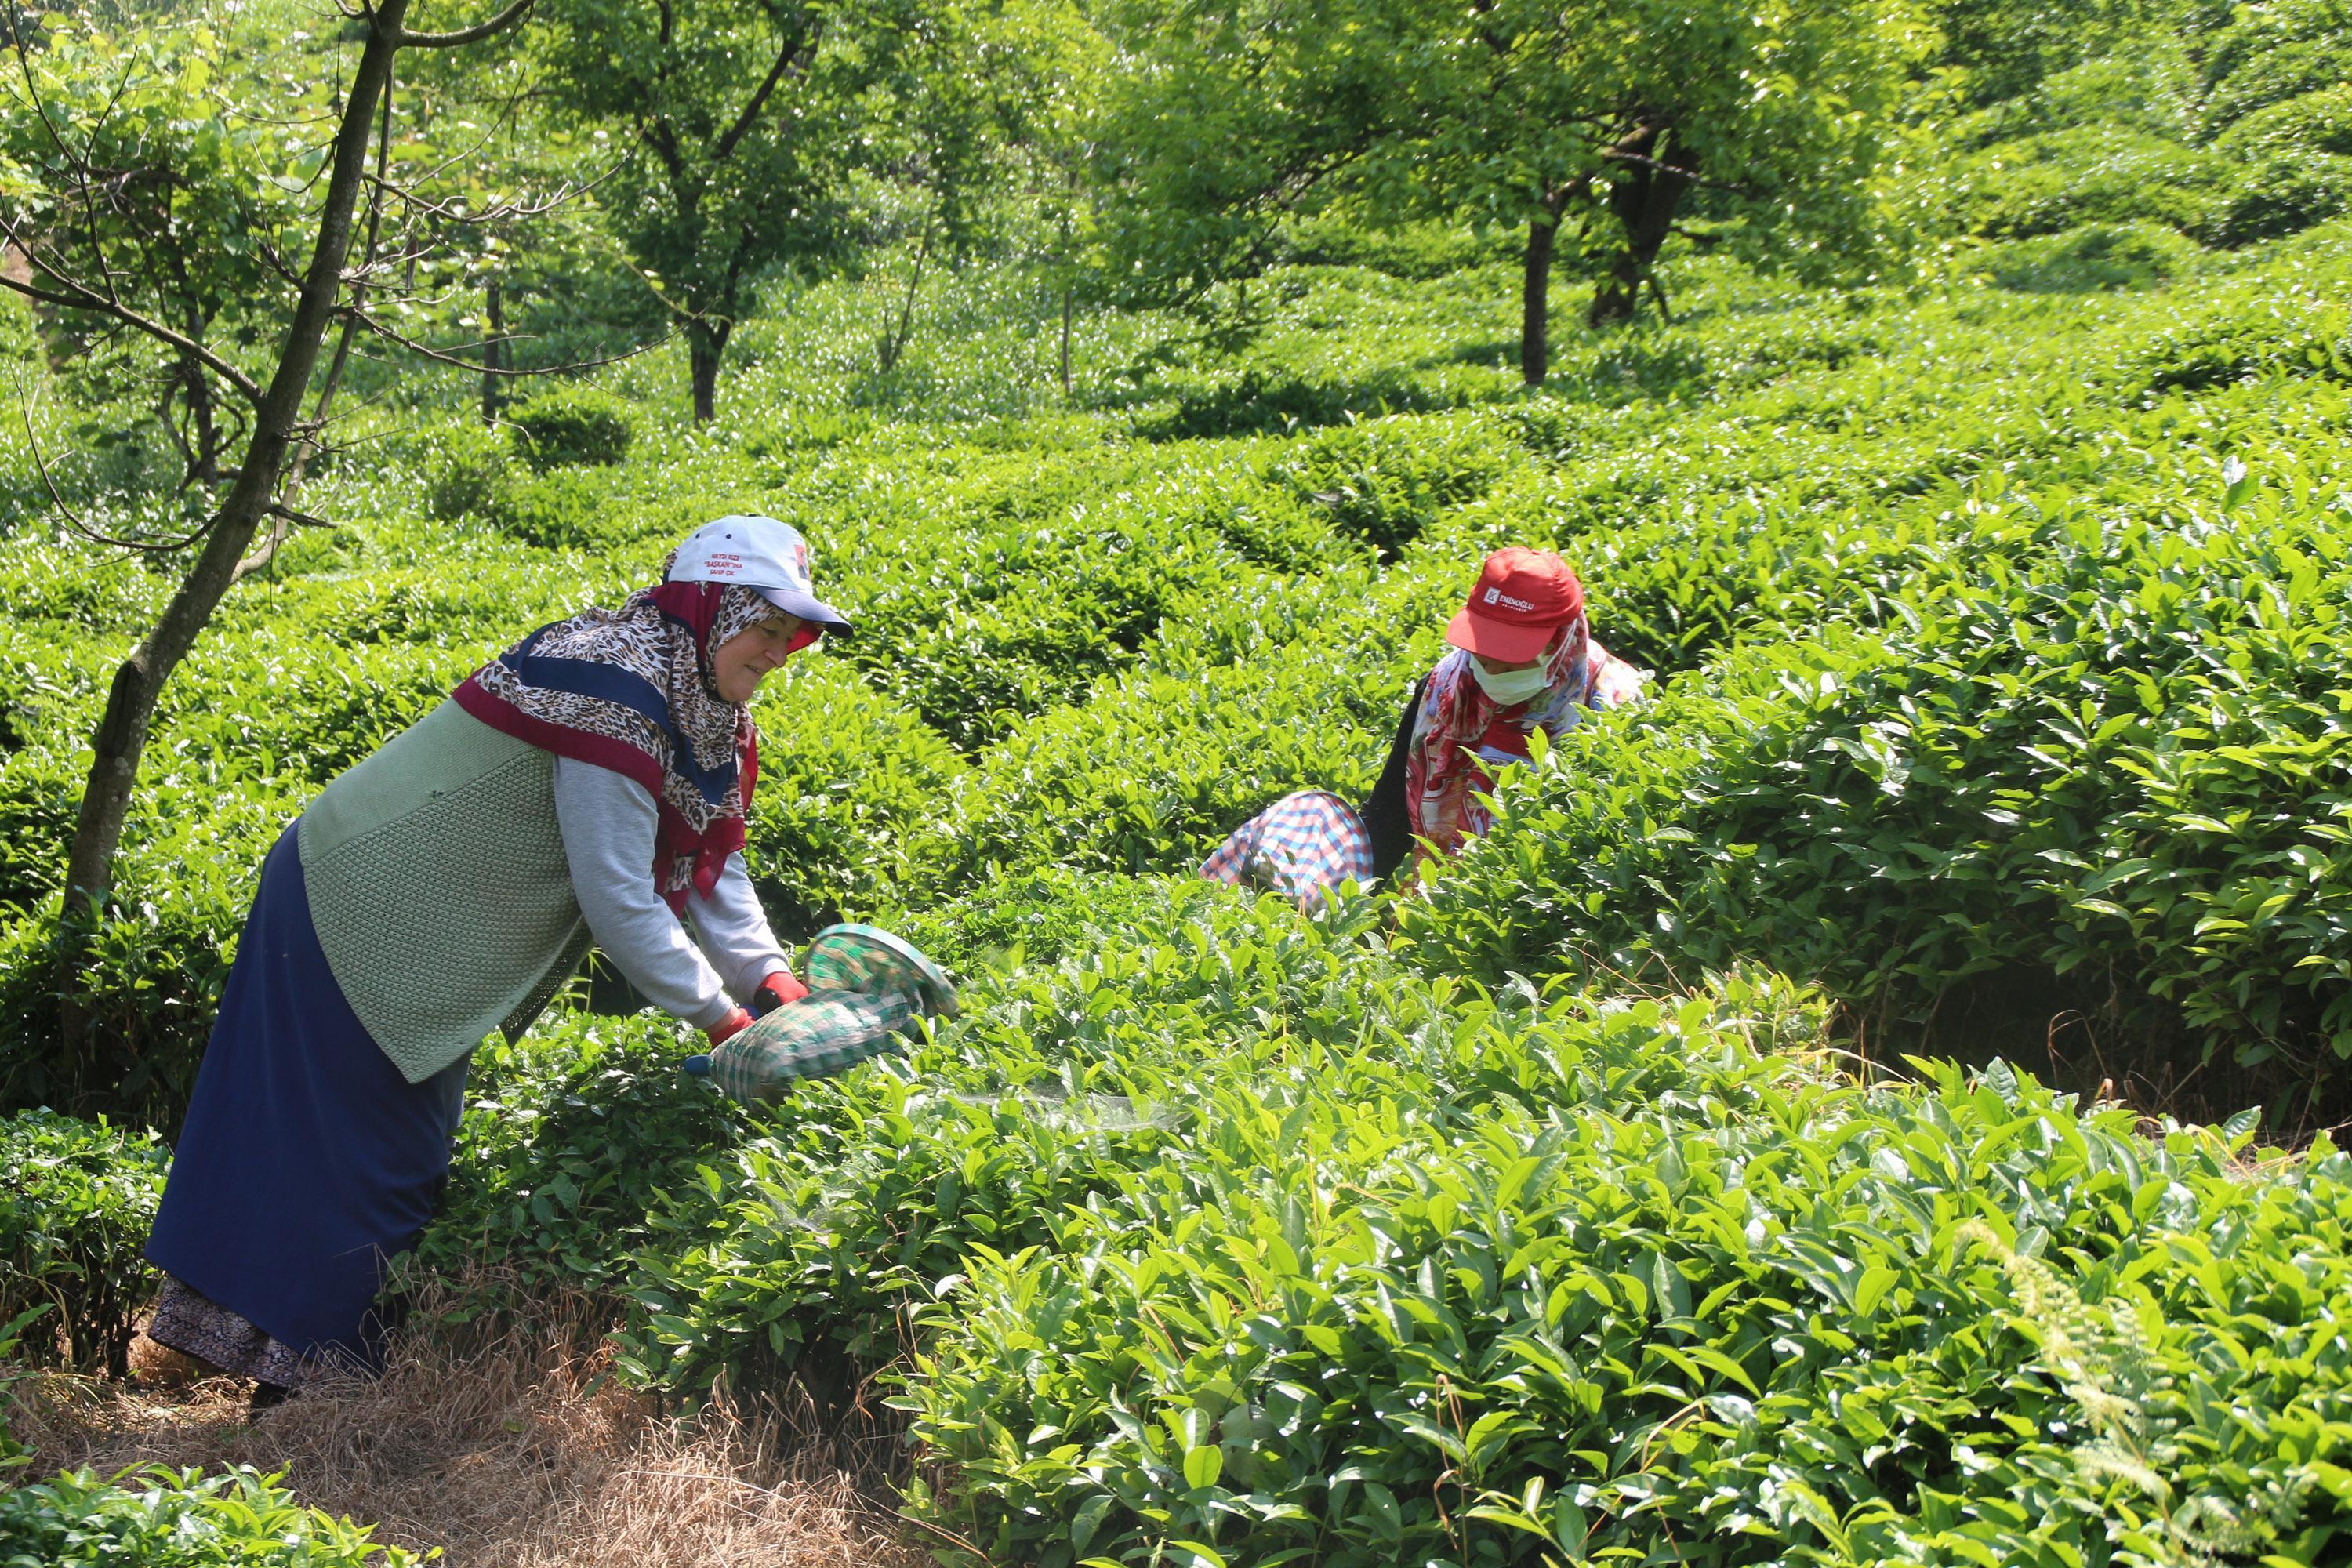 Çay ailece toplandı, 100 milyon dolar üreticiye kaldı